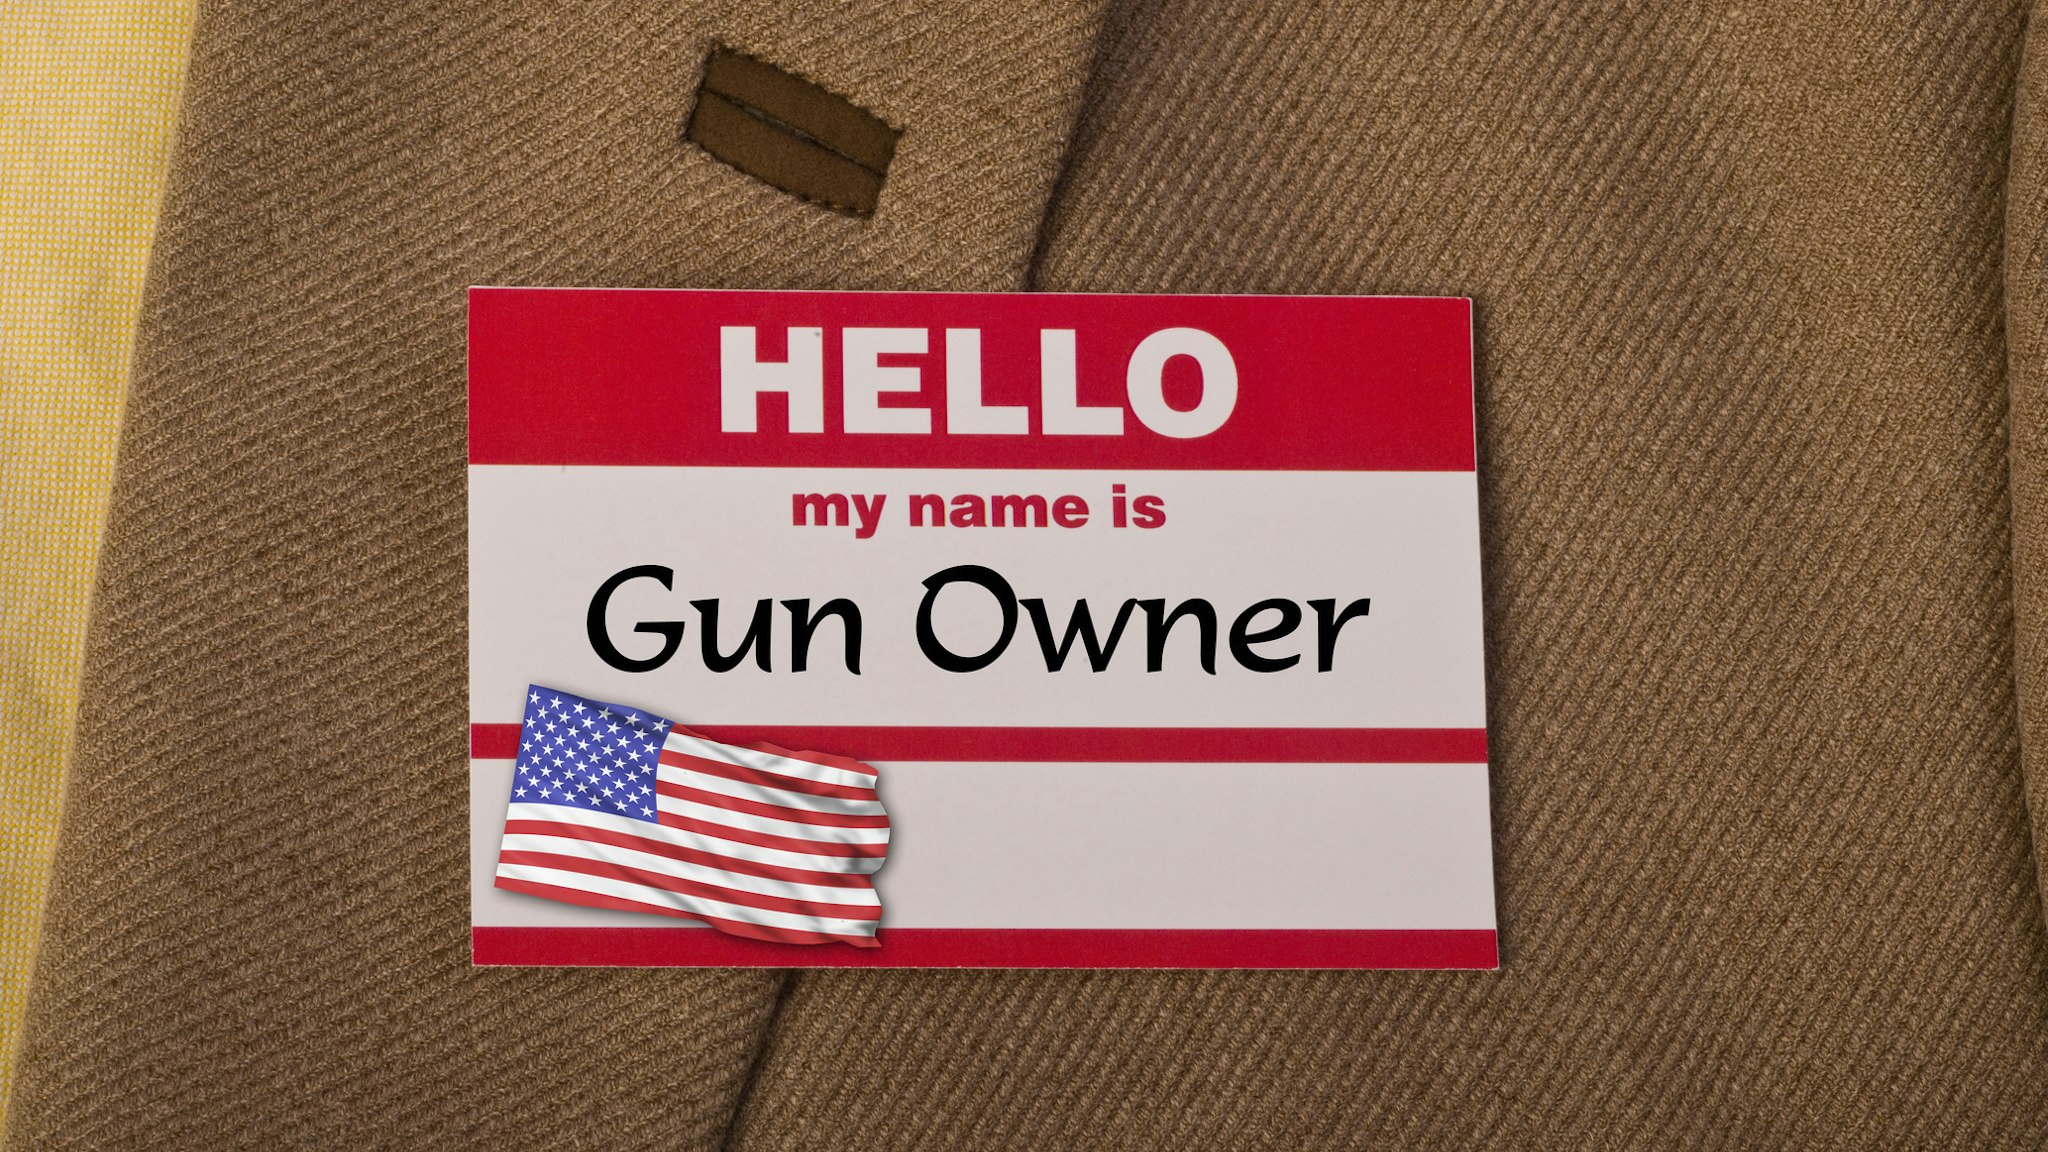 My name is gun owner.